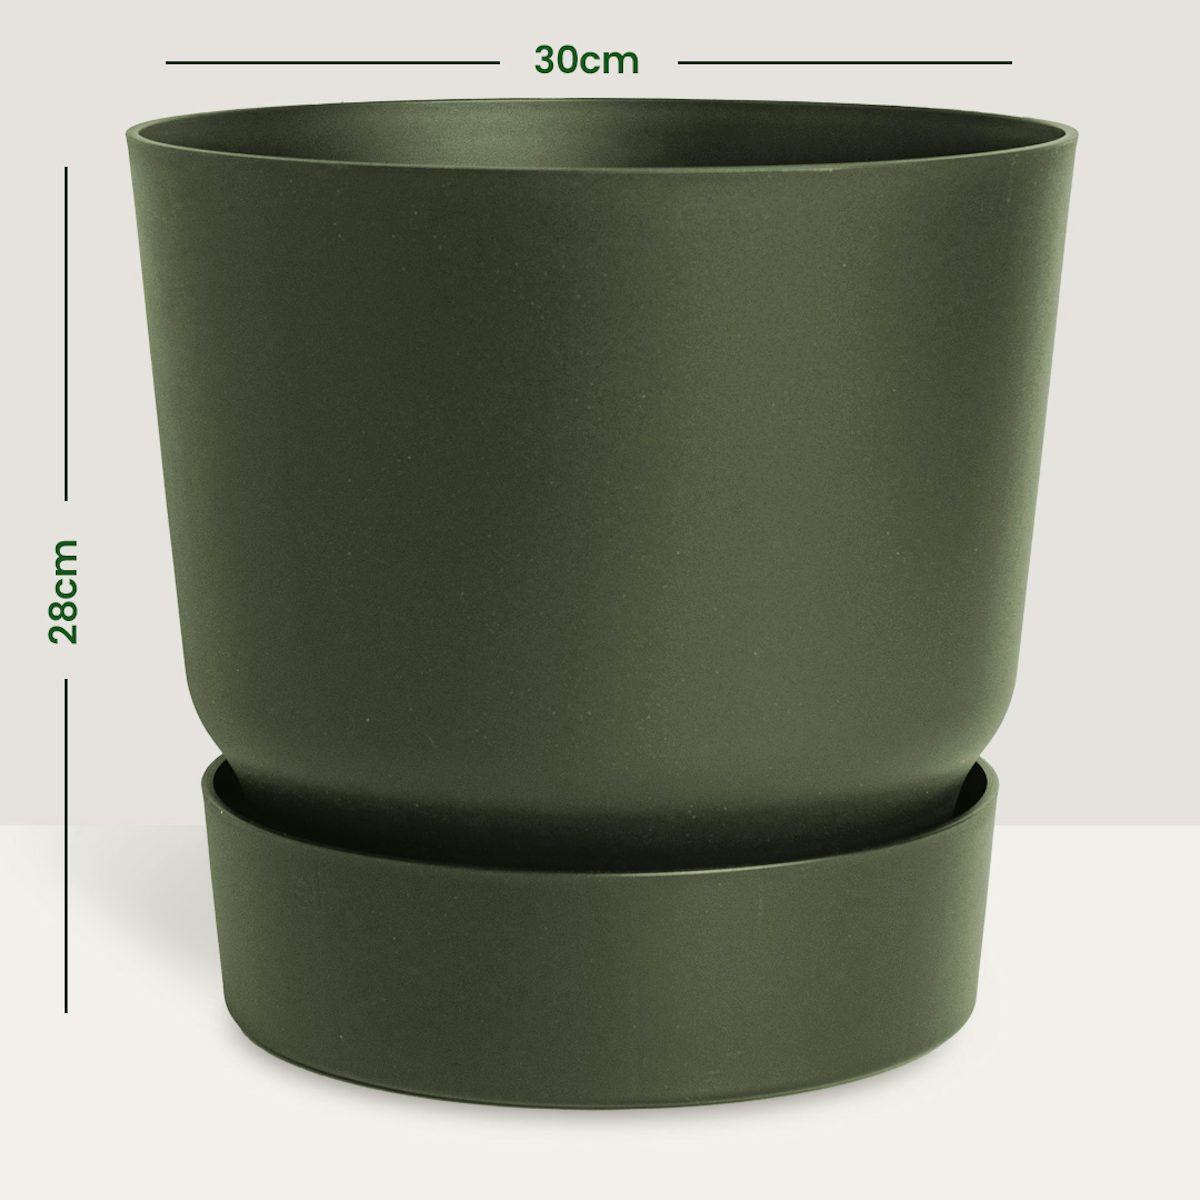 Trieste Pot - XXL/30cm